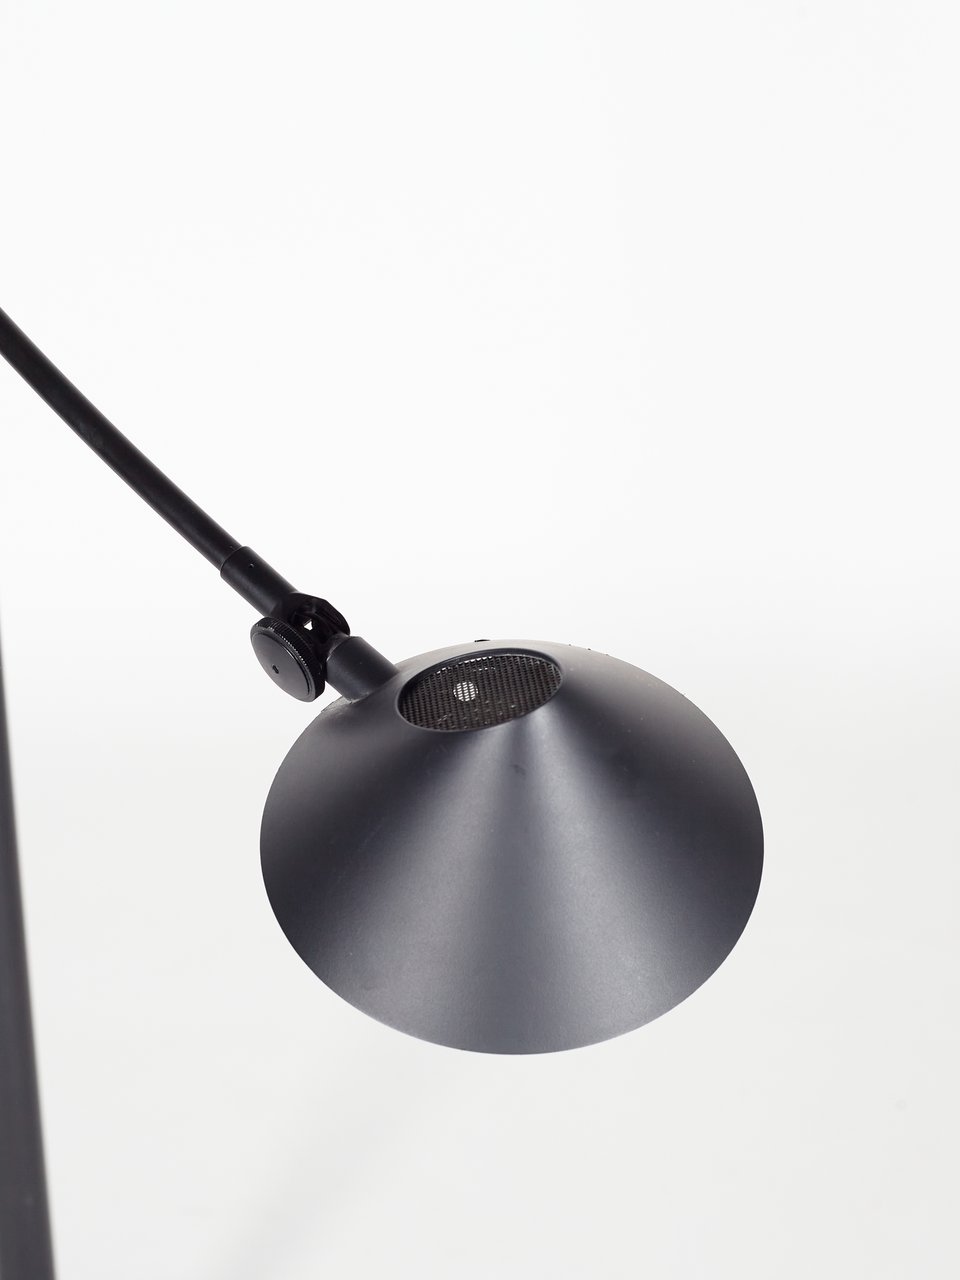 Artemide 'Nestore' design lamp Carlo Forcolini image 5